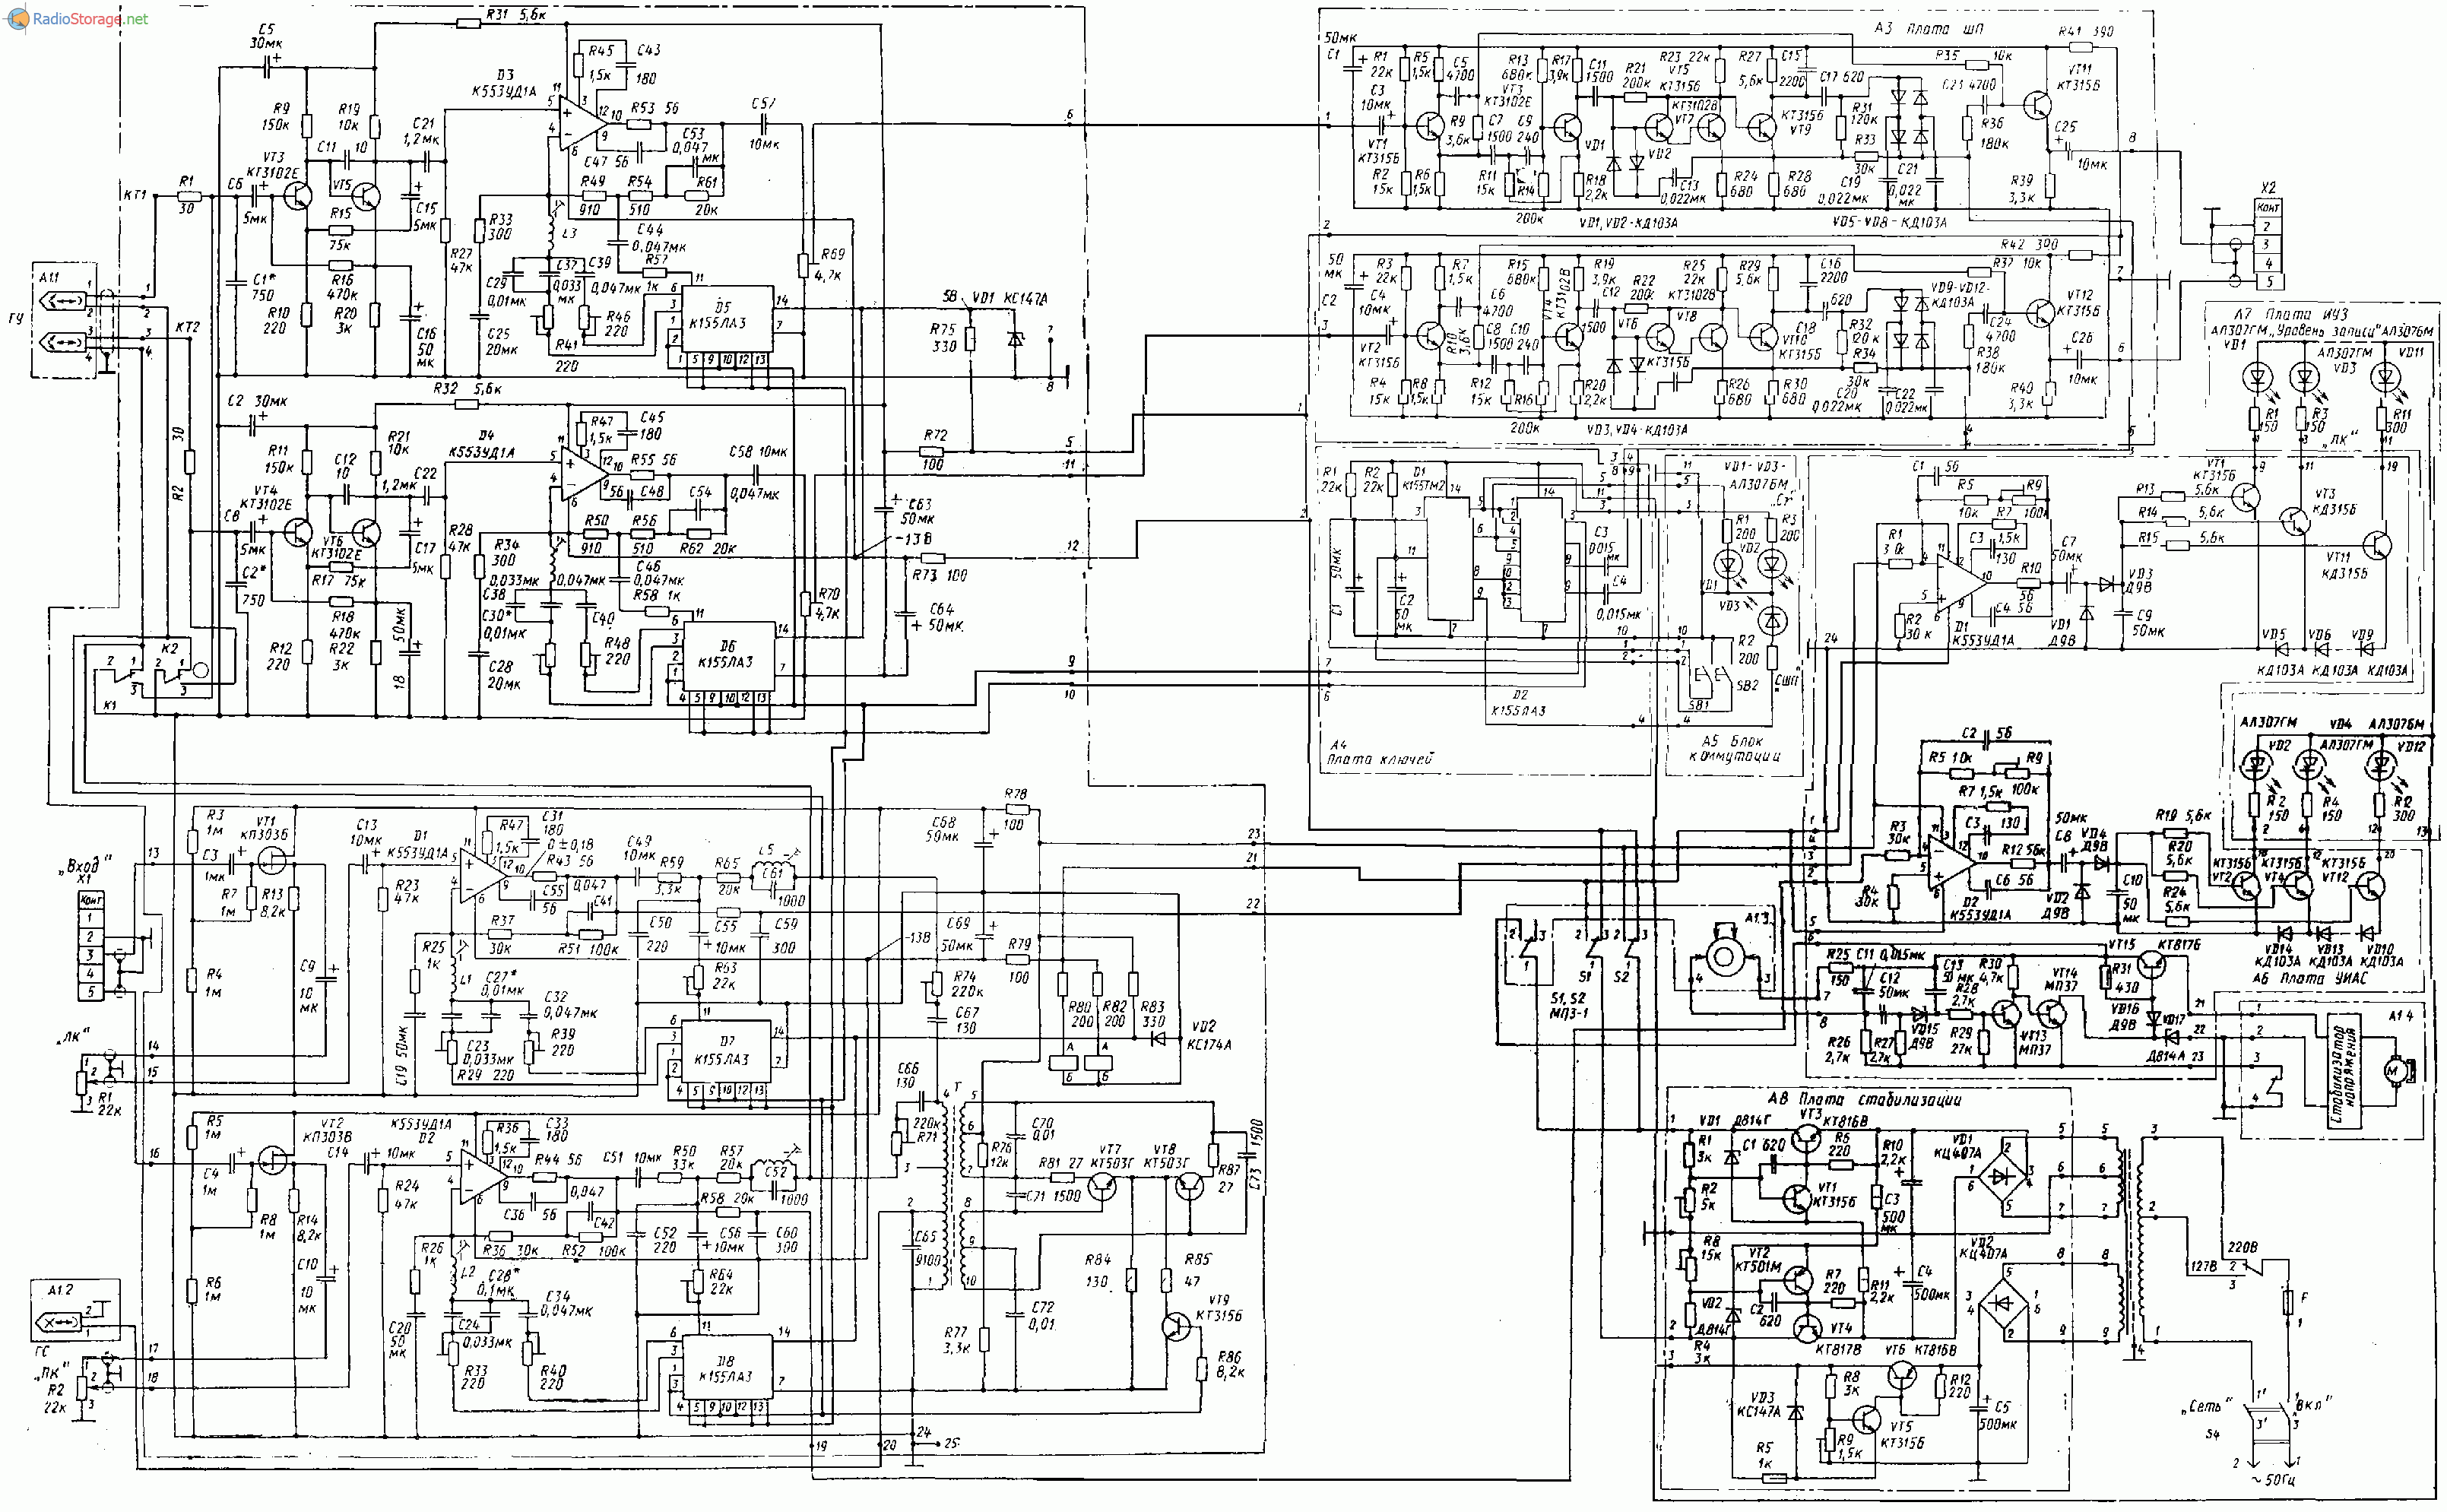 Ода-101 стерео (тюнер, магнитофон, усилитель мощности), схема